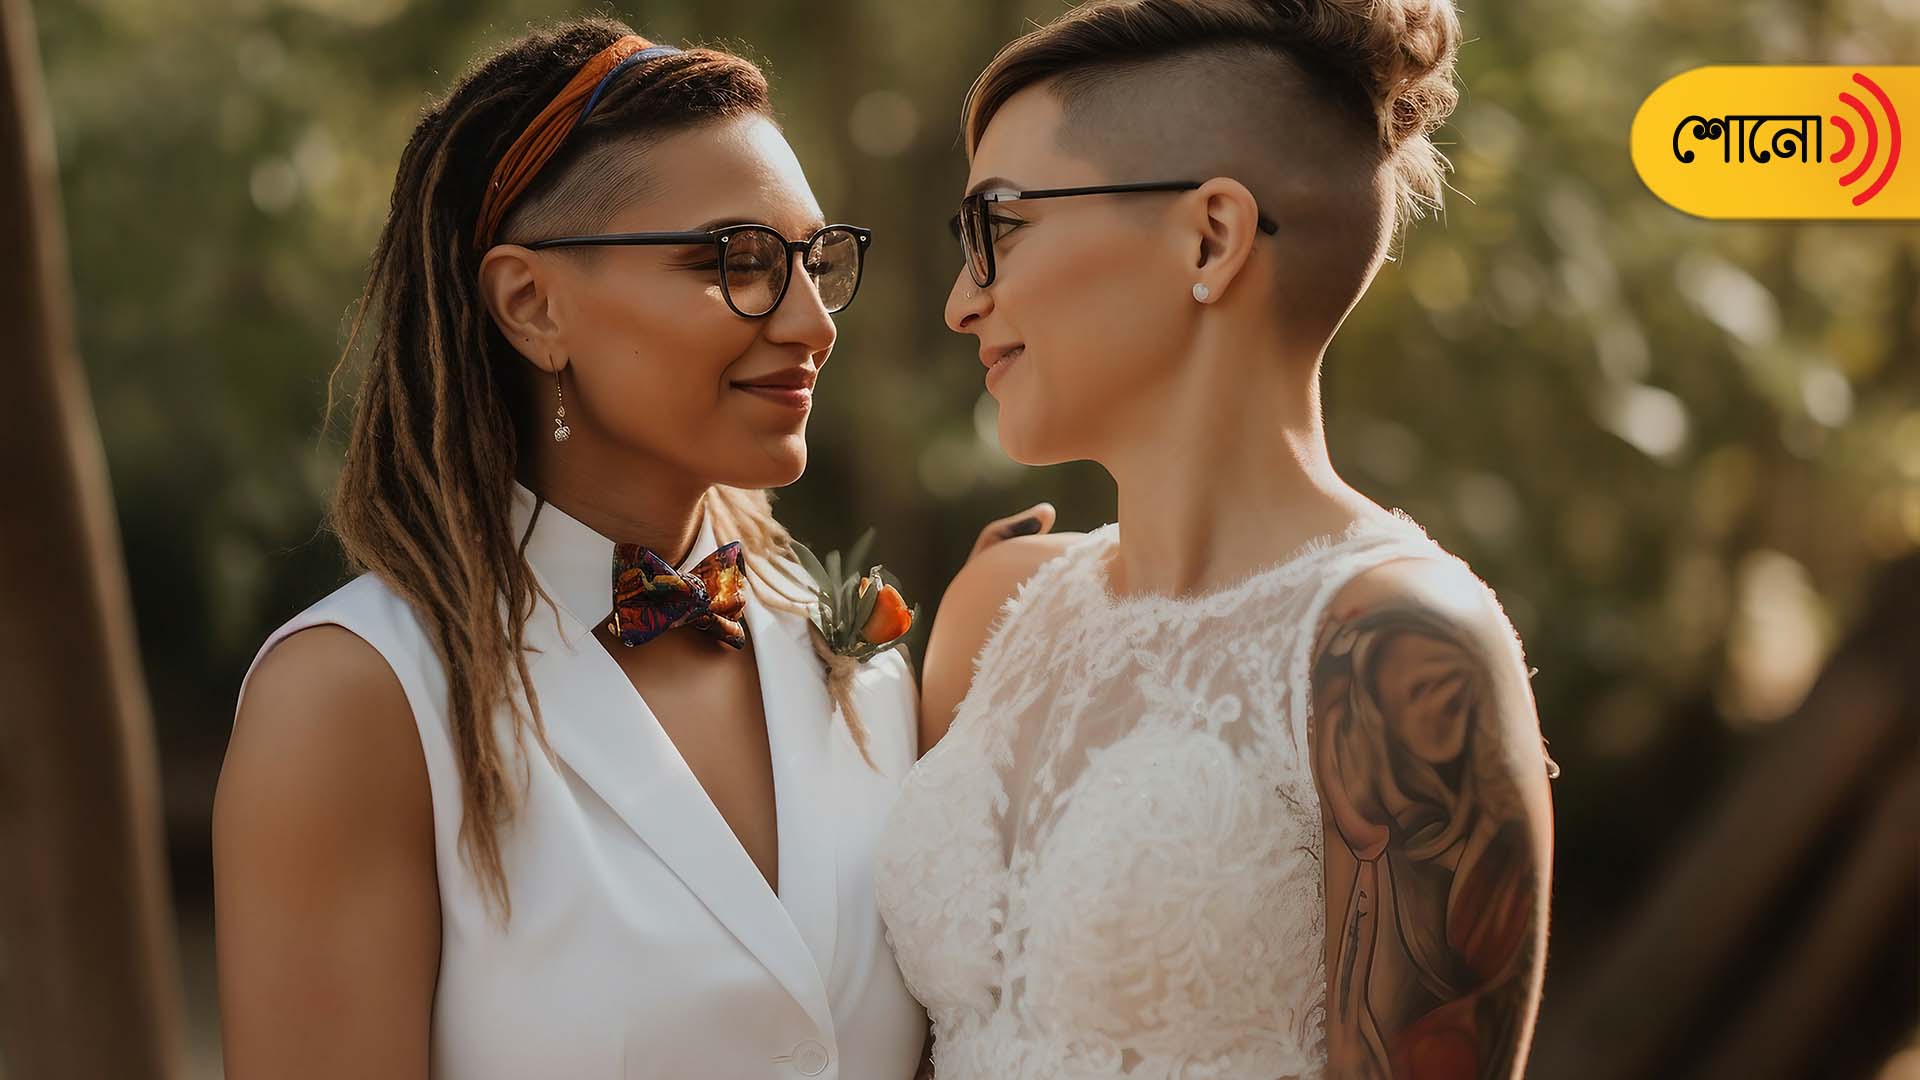 Supreme court verdict on LGBTQ marriage right